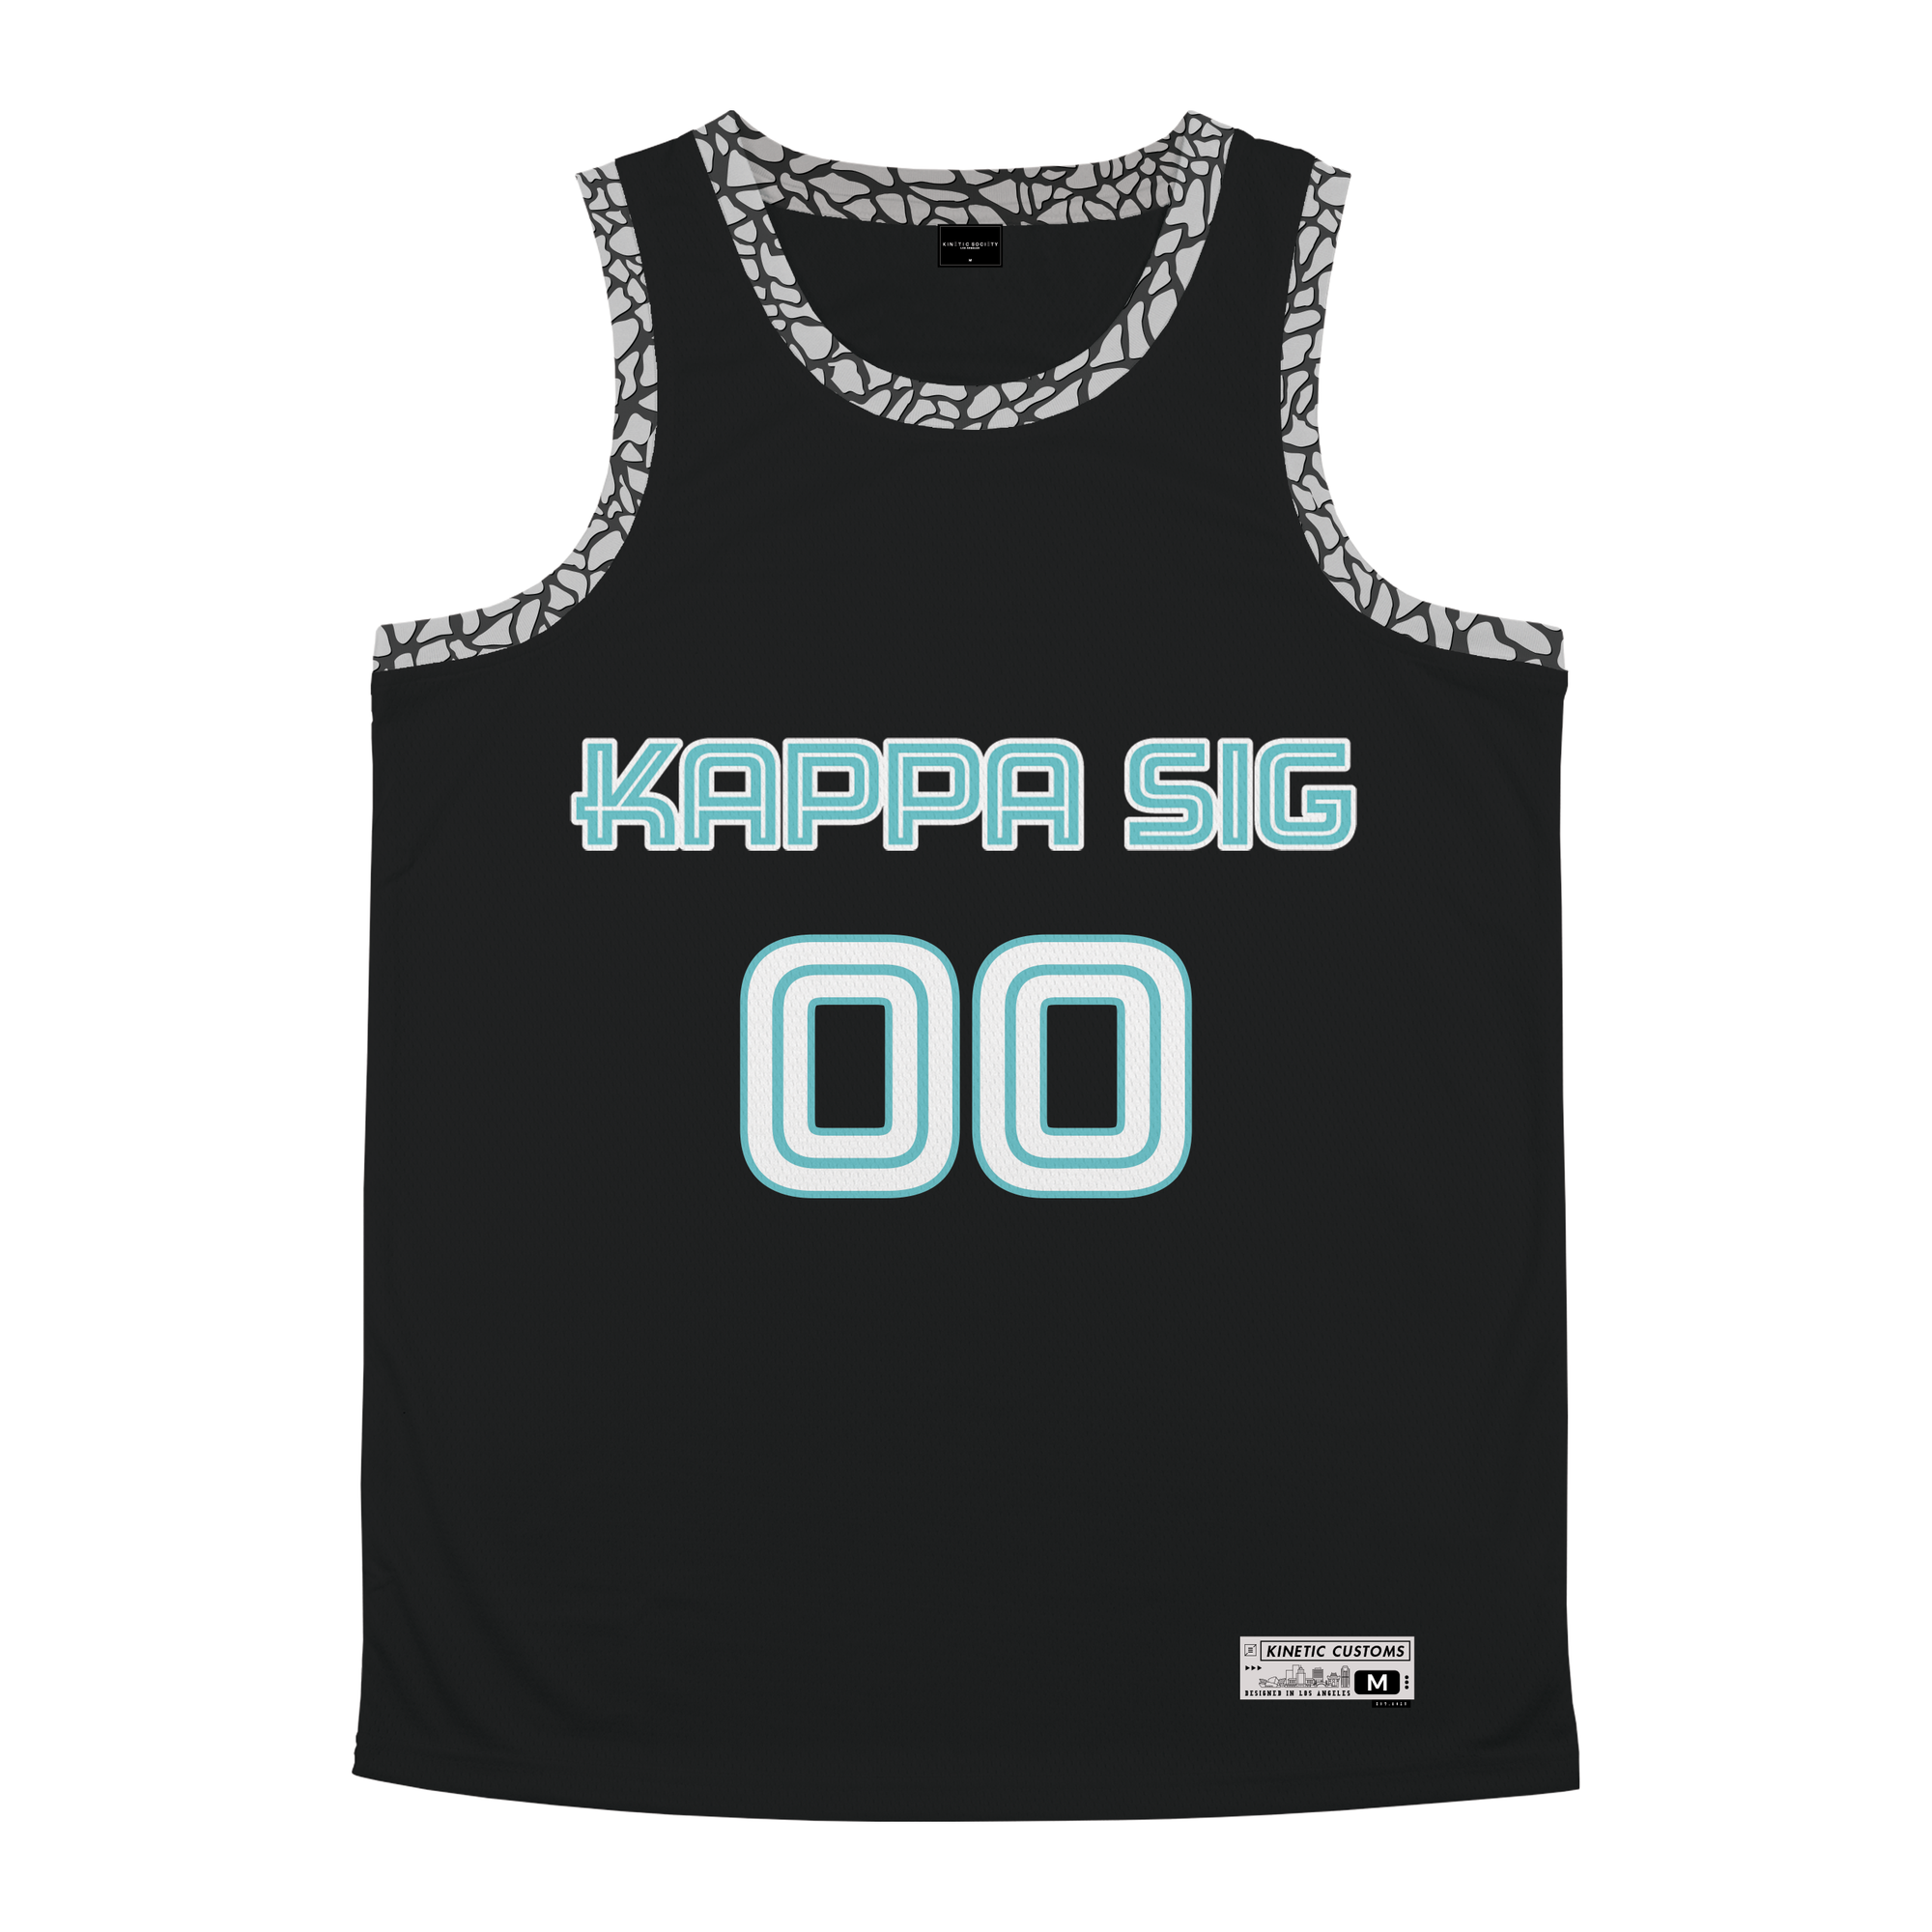 Kappa Sigma - Cement Basketball Jersey